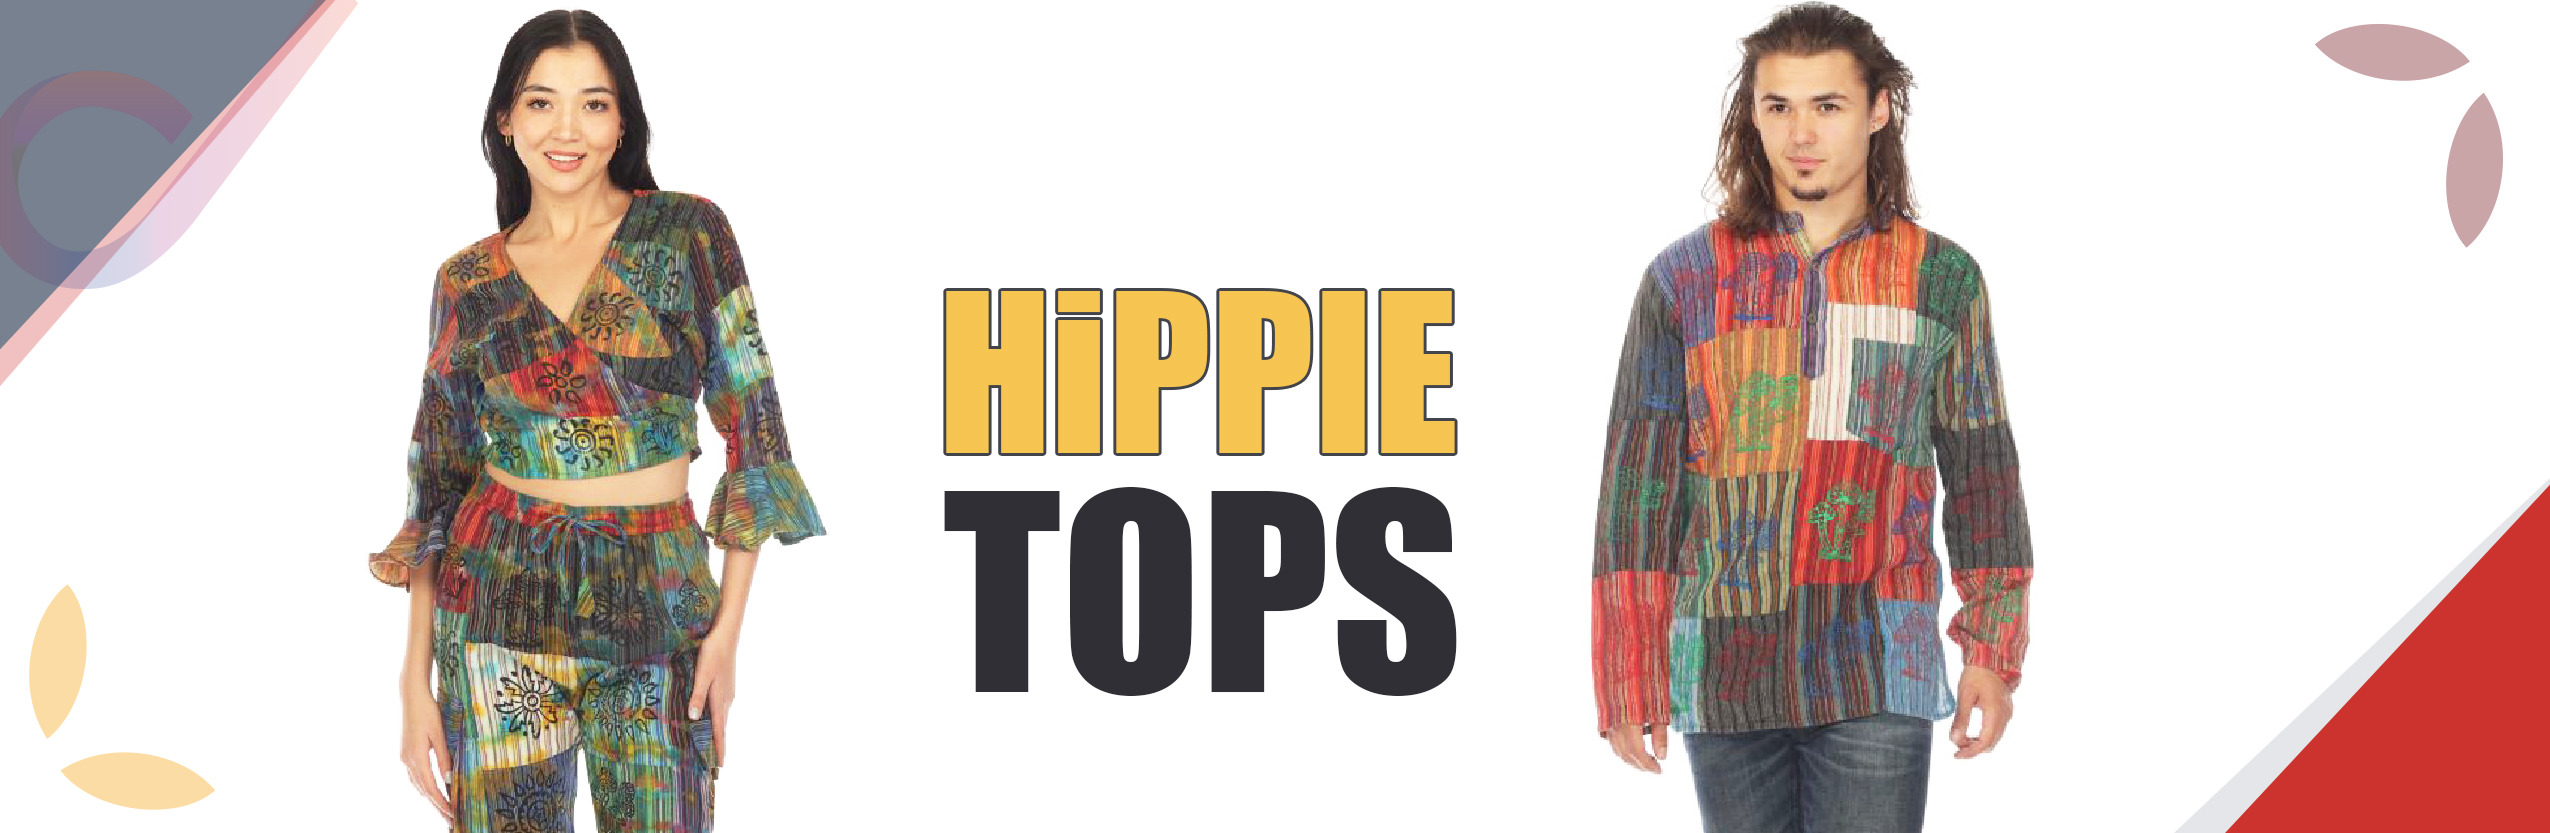 HIPPIE TOPS